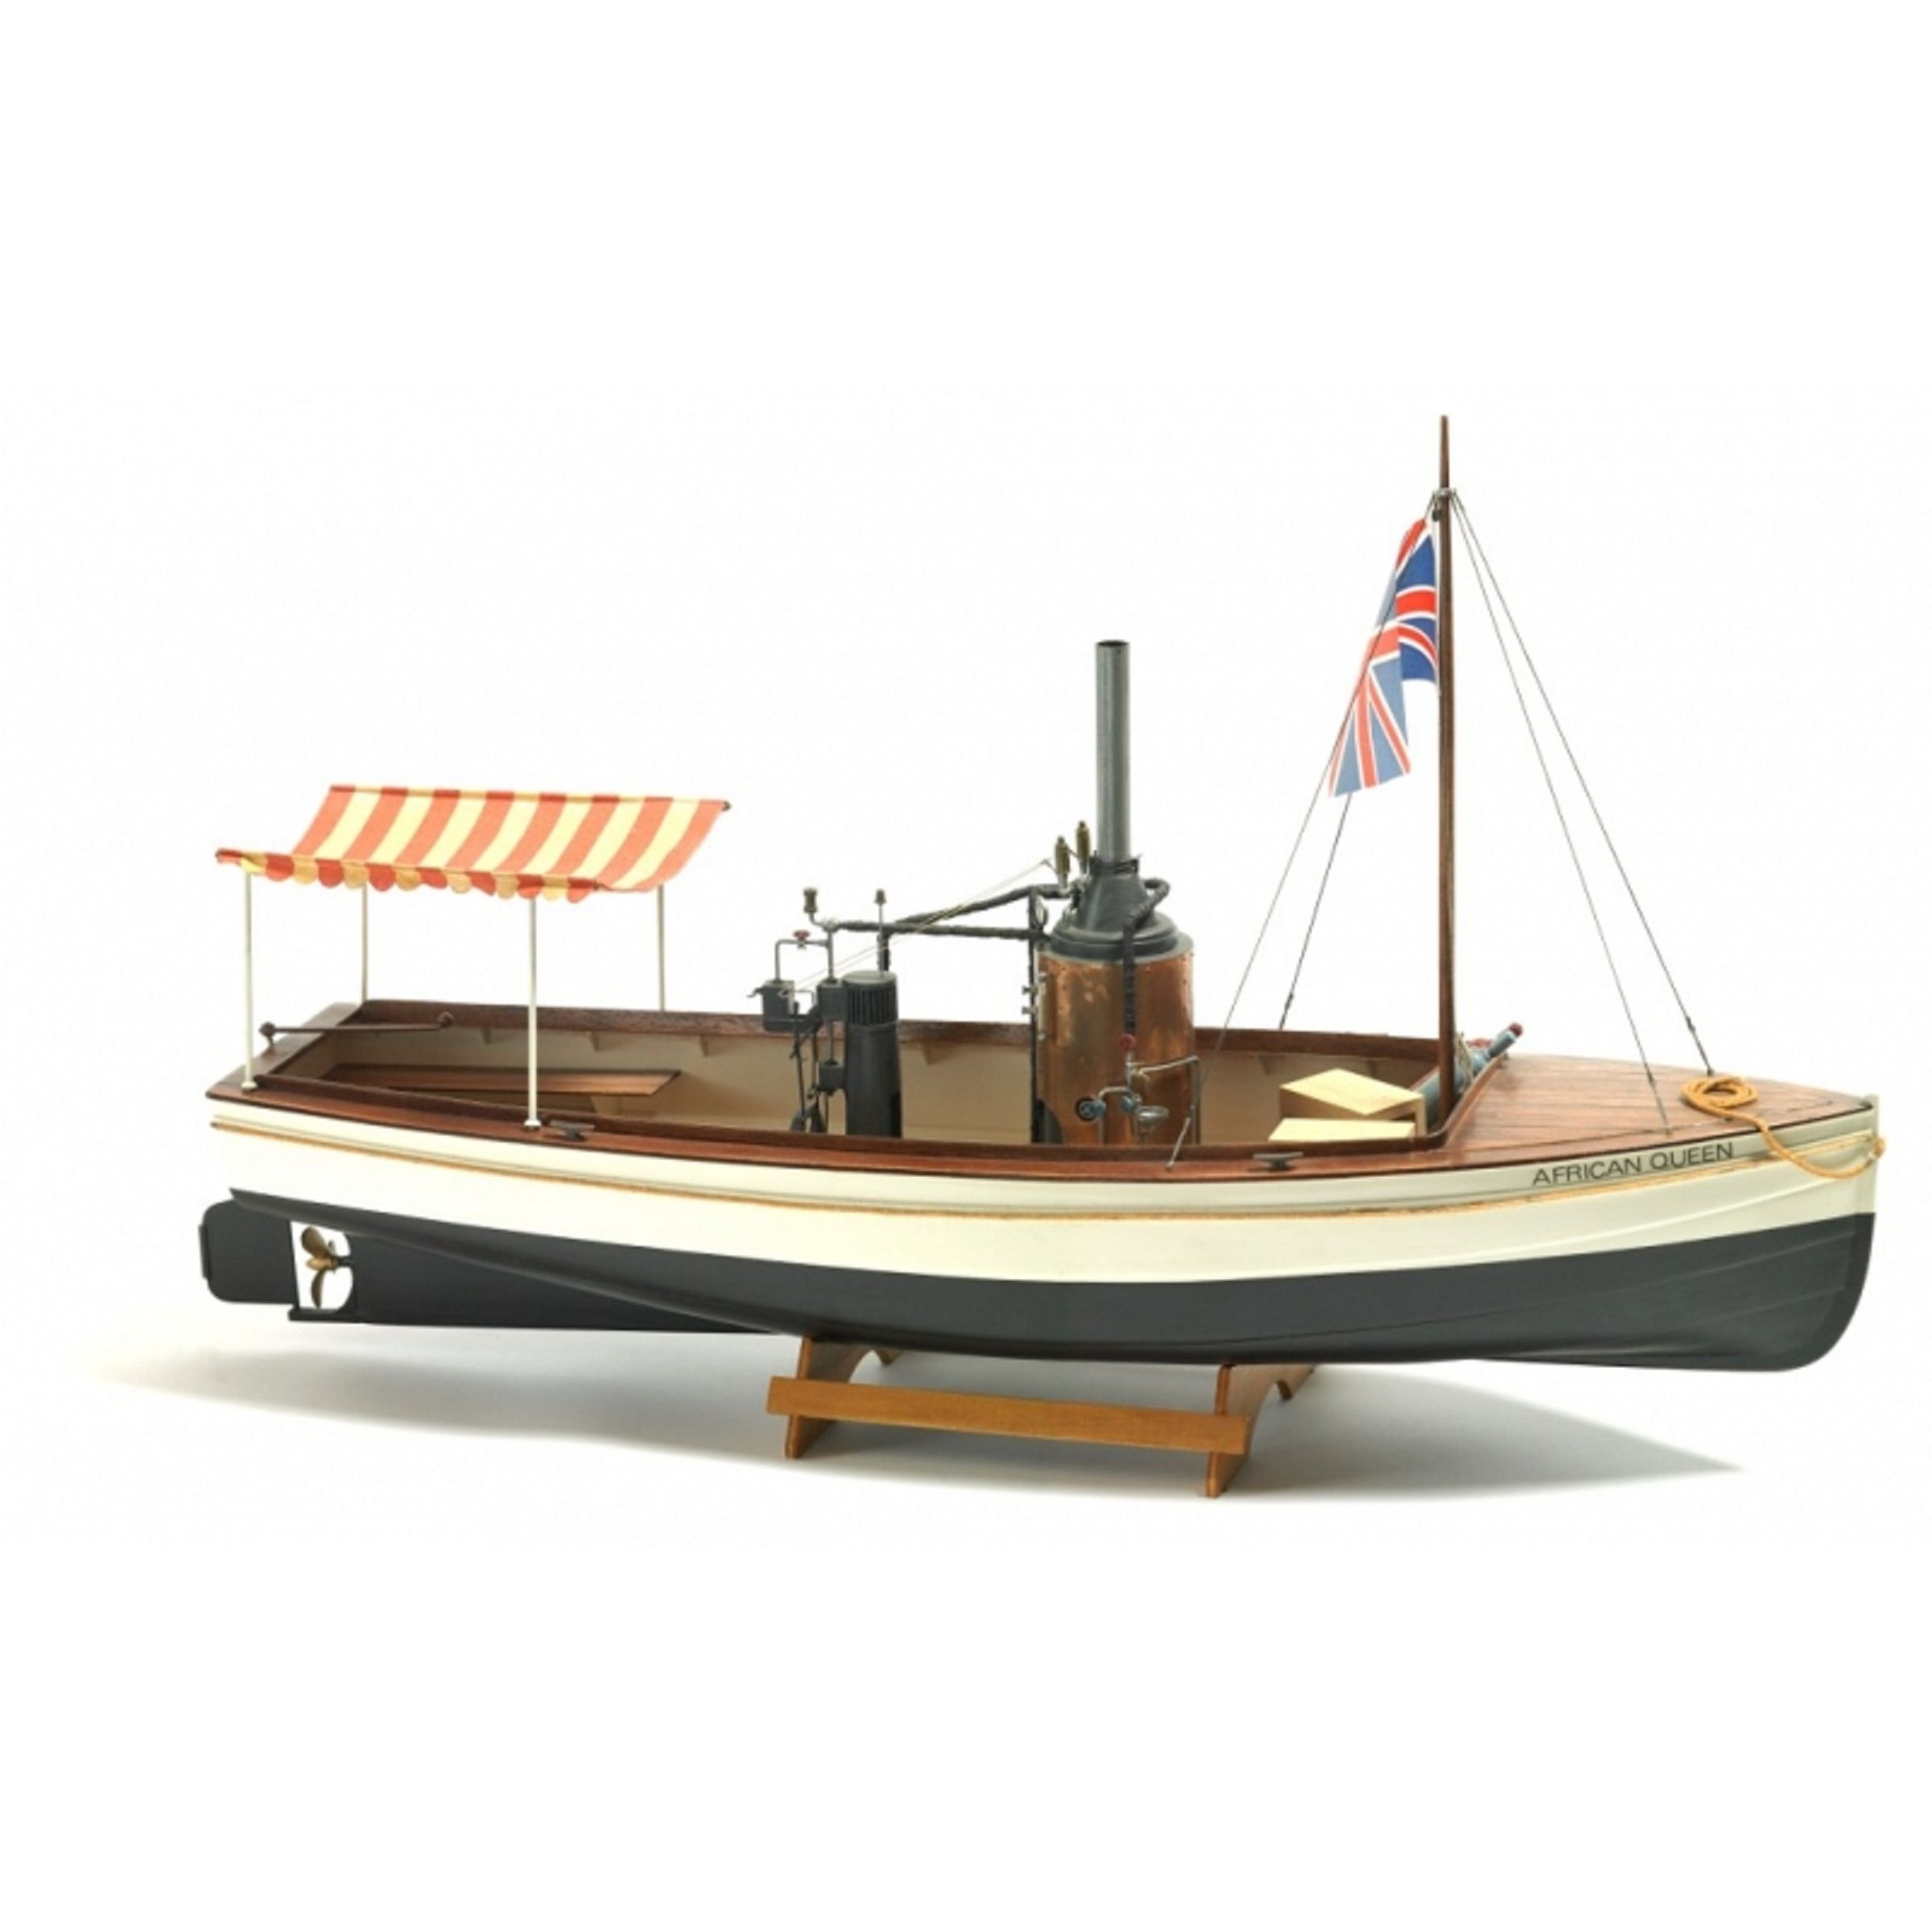 Maquette à monter de la "Reine Africaine" - Billing Boats (B588)